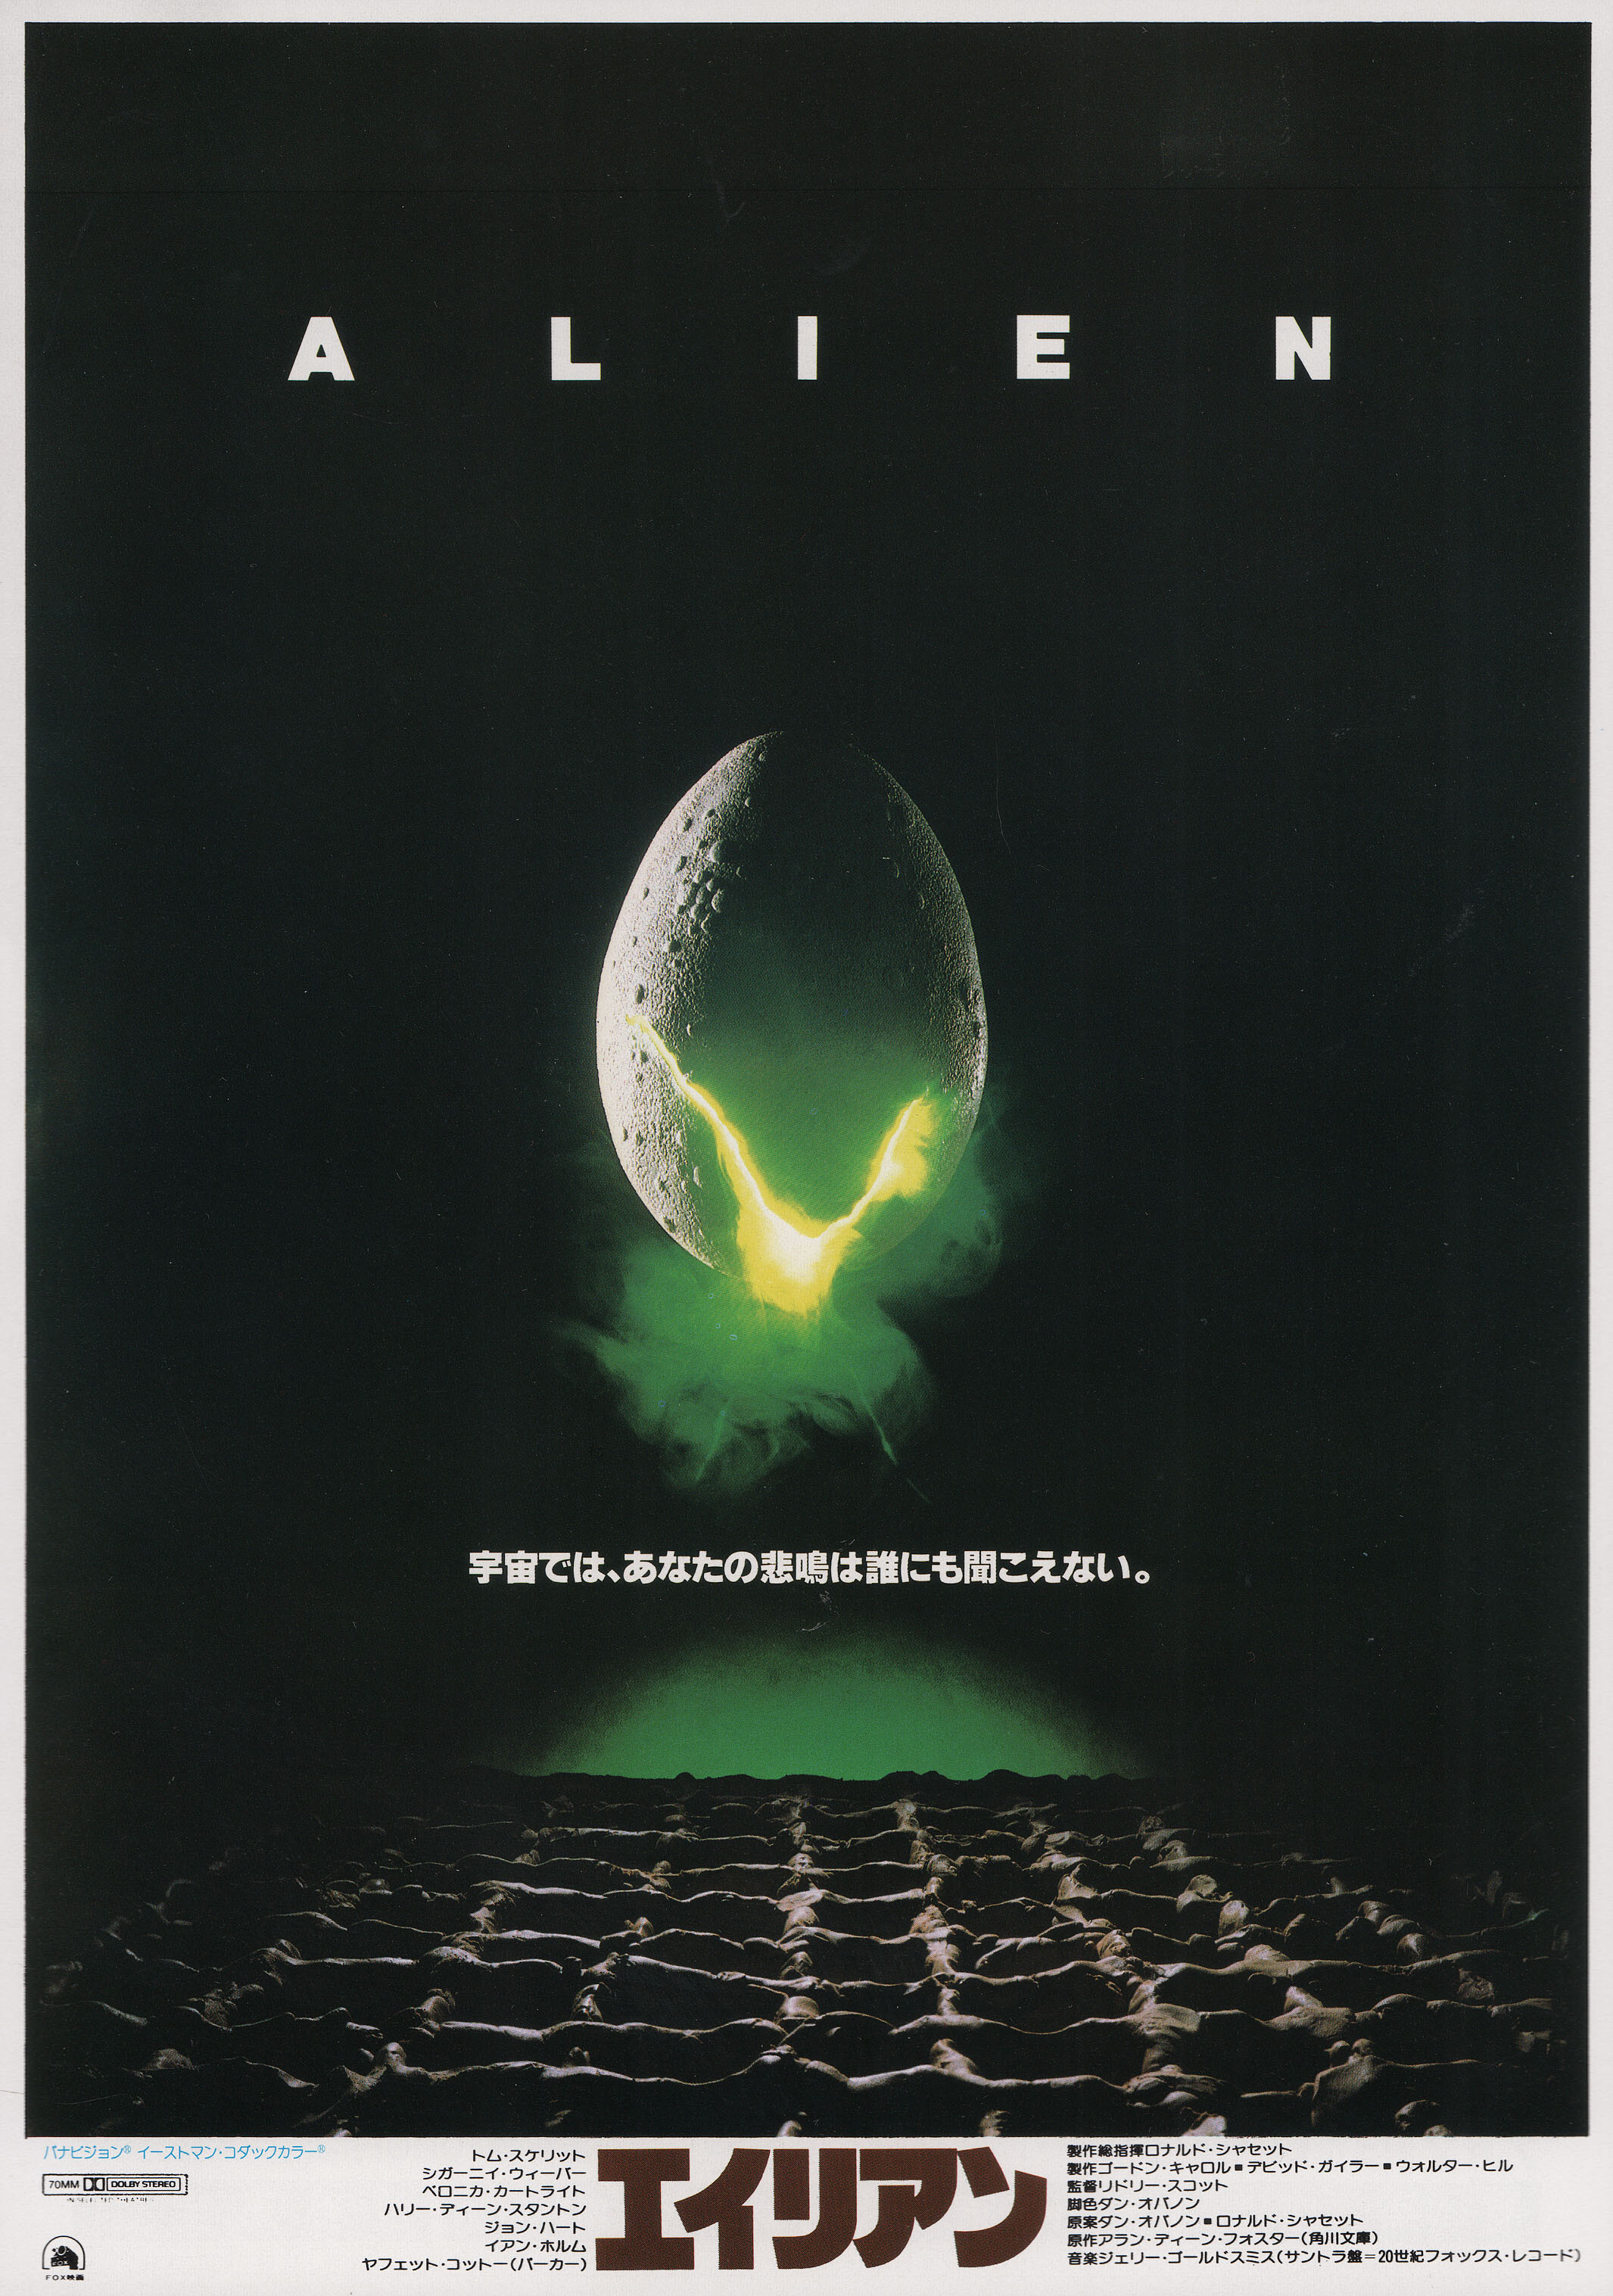 Чужой (Alien, 1979), режиссёр Ридли Скотт, японский постер к фильму (ужасы, 1979 год) (2)